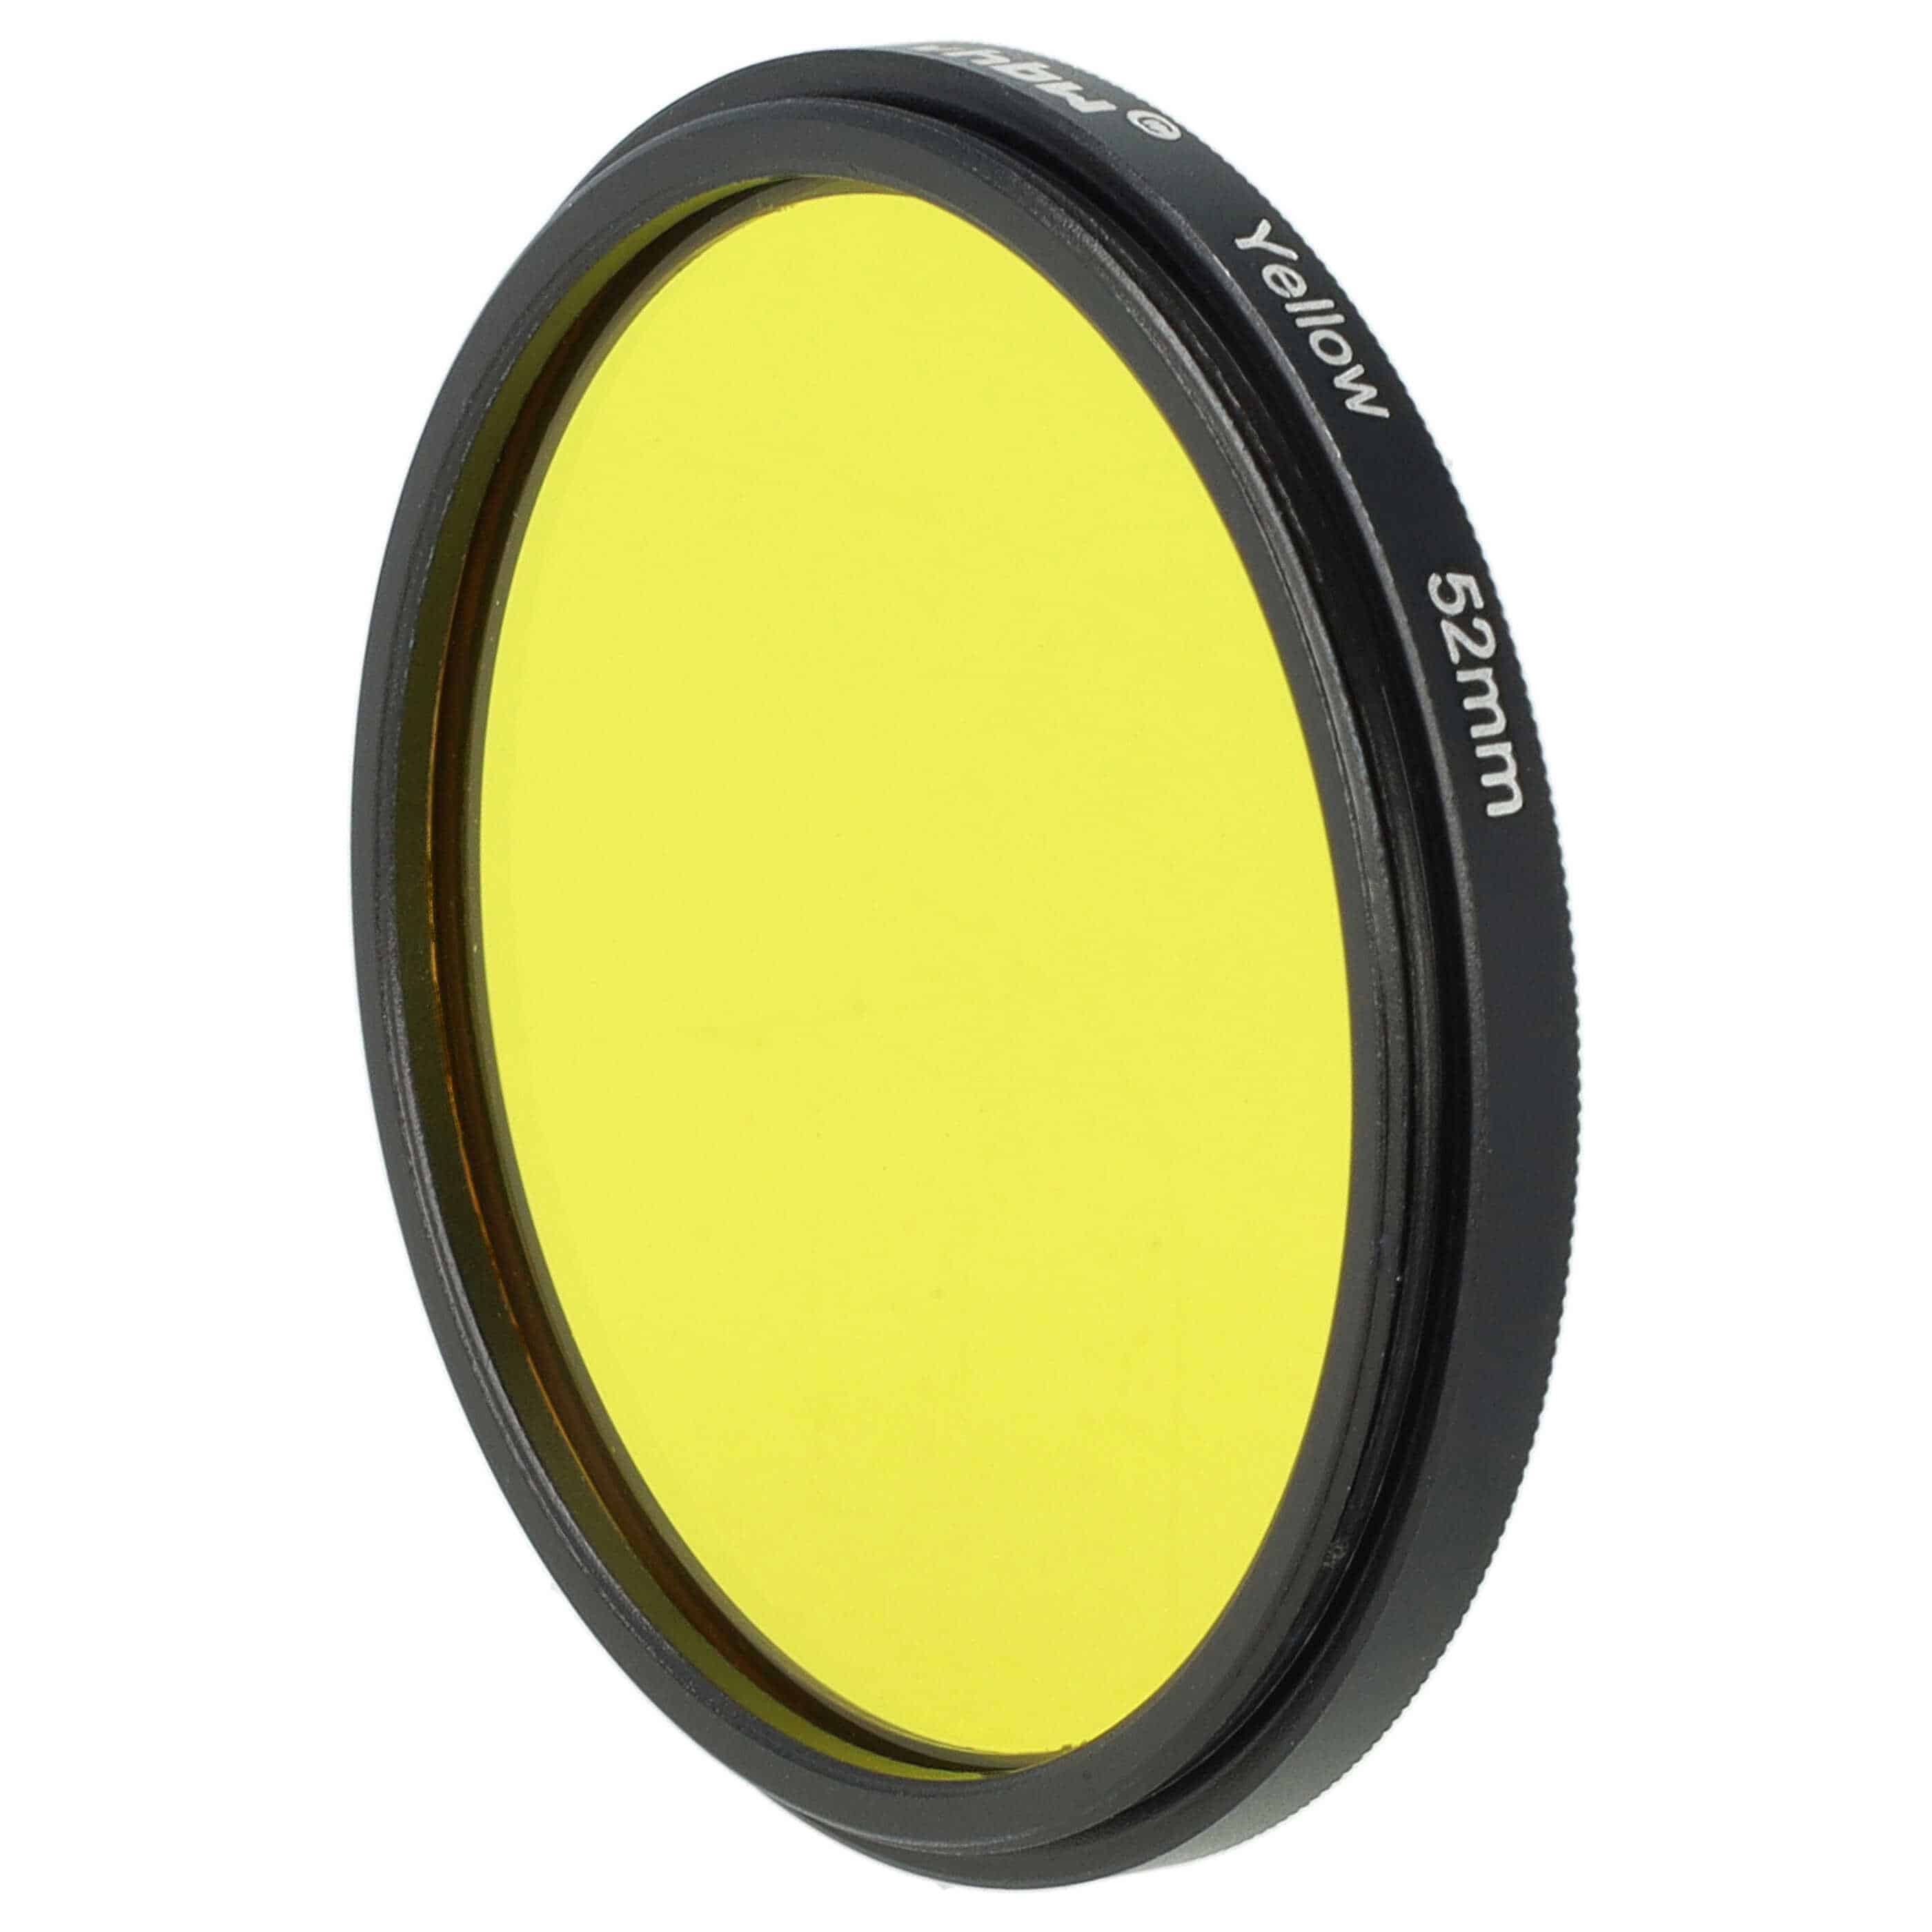 Filtre de couleur jaune pour objectifs d'appareils photo de 52 mm - Filtre jaune